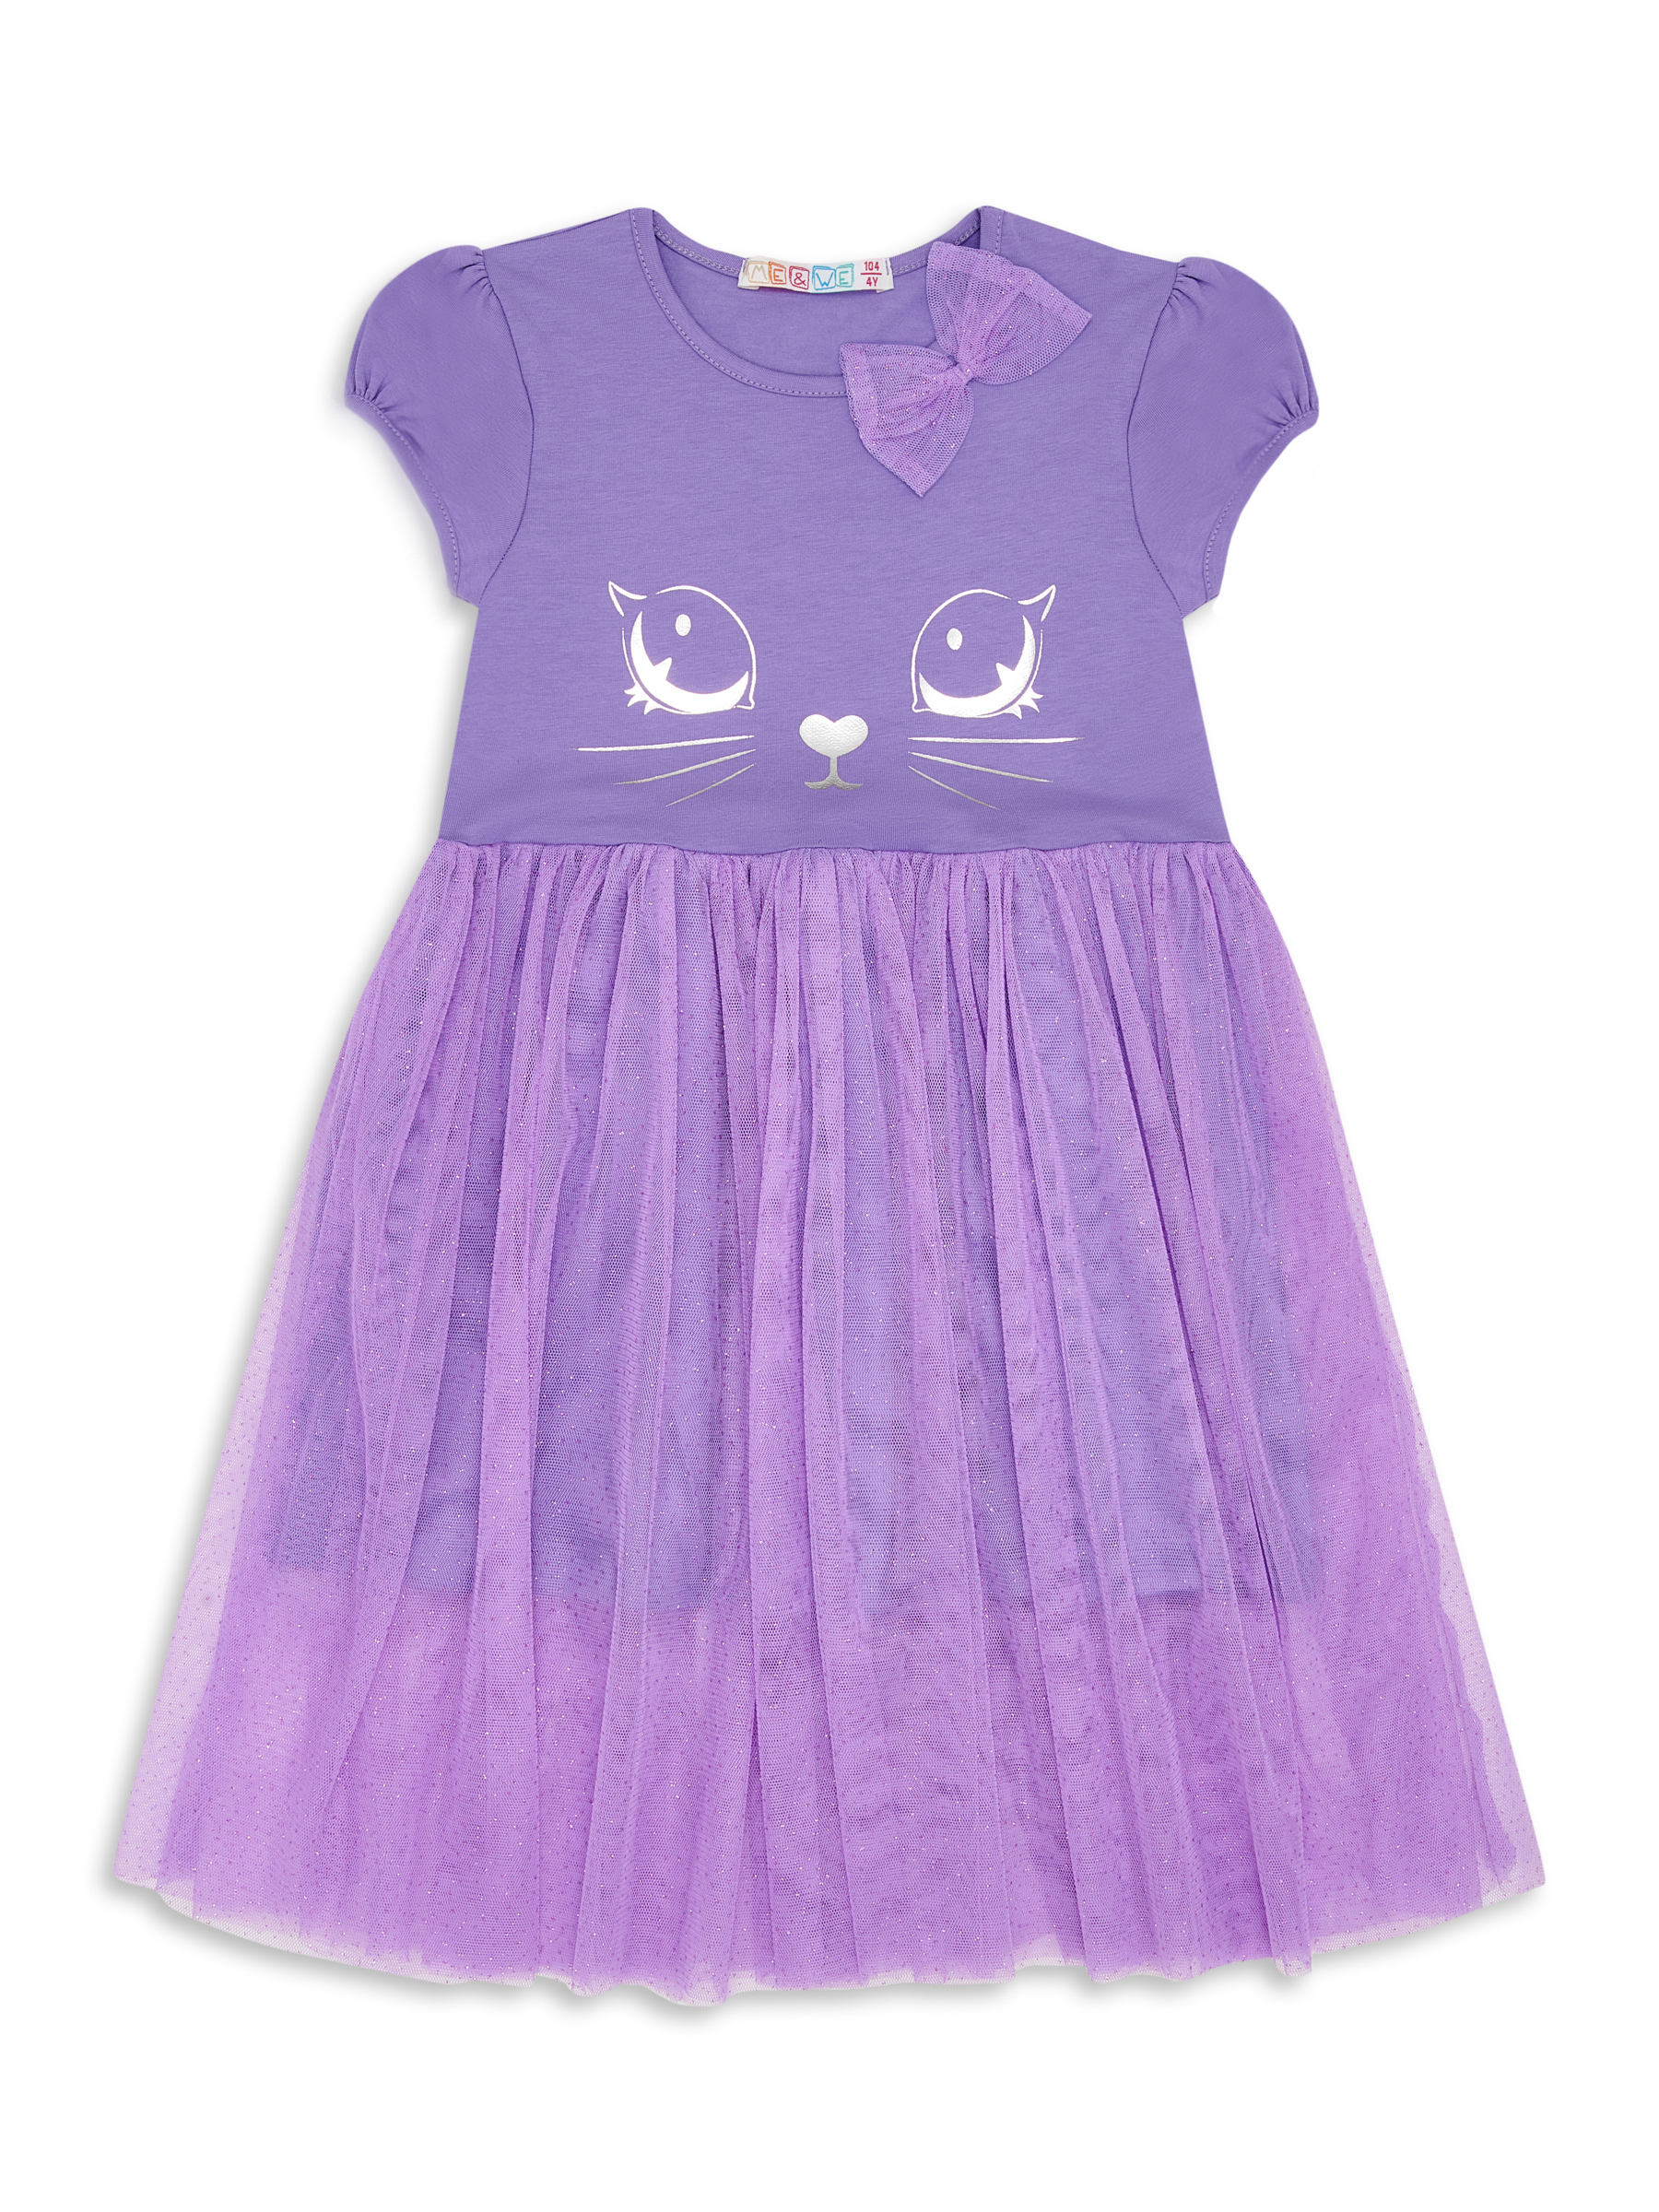 Платье детское Me&We KG218-J601-699 цв. фиолетовый р. 110 пальто детское orso bianco дизель фиолетовый 134